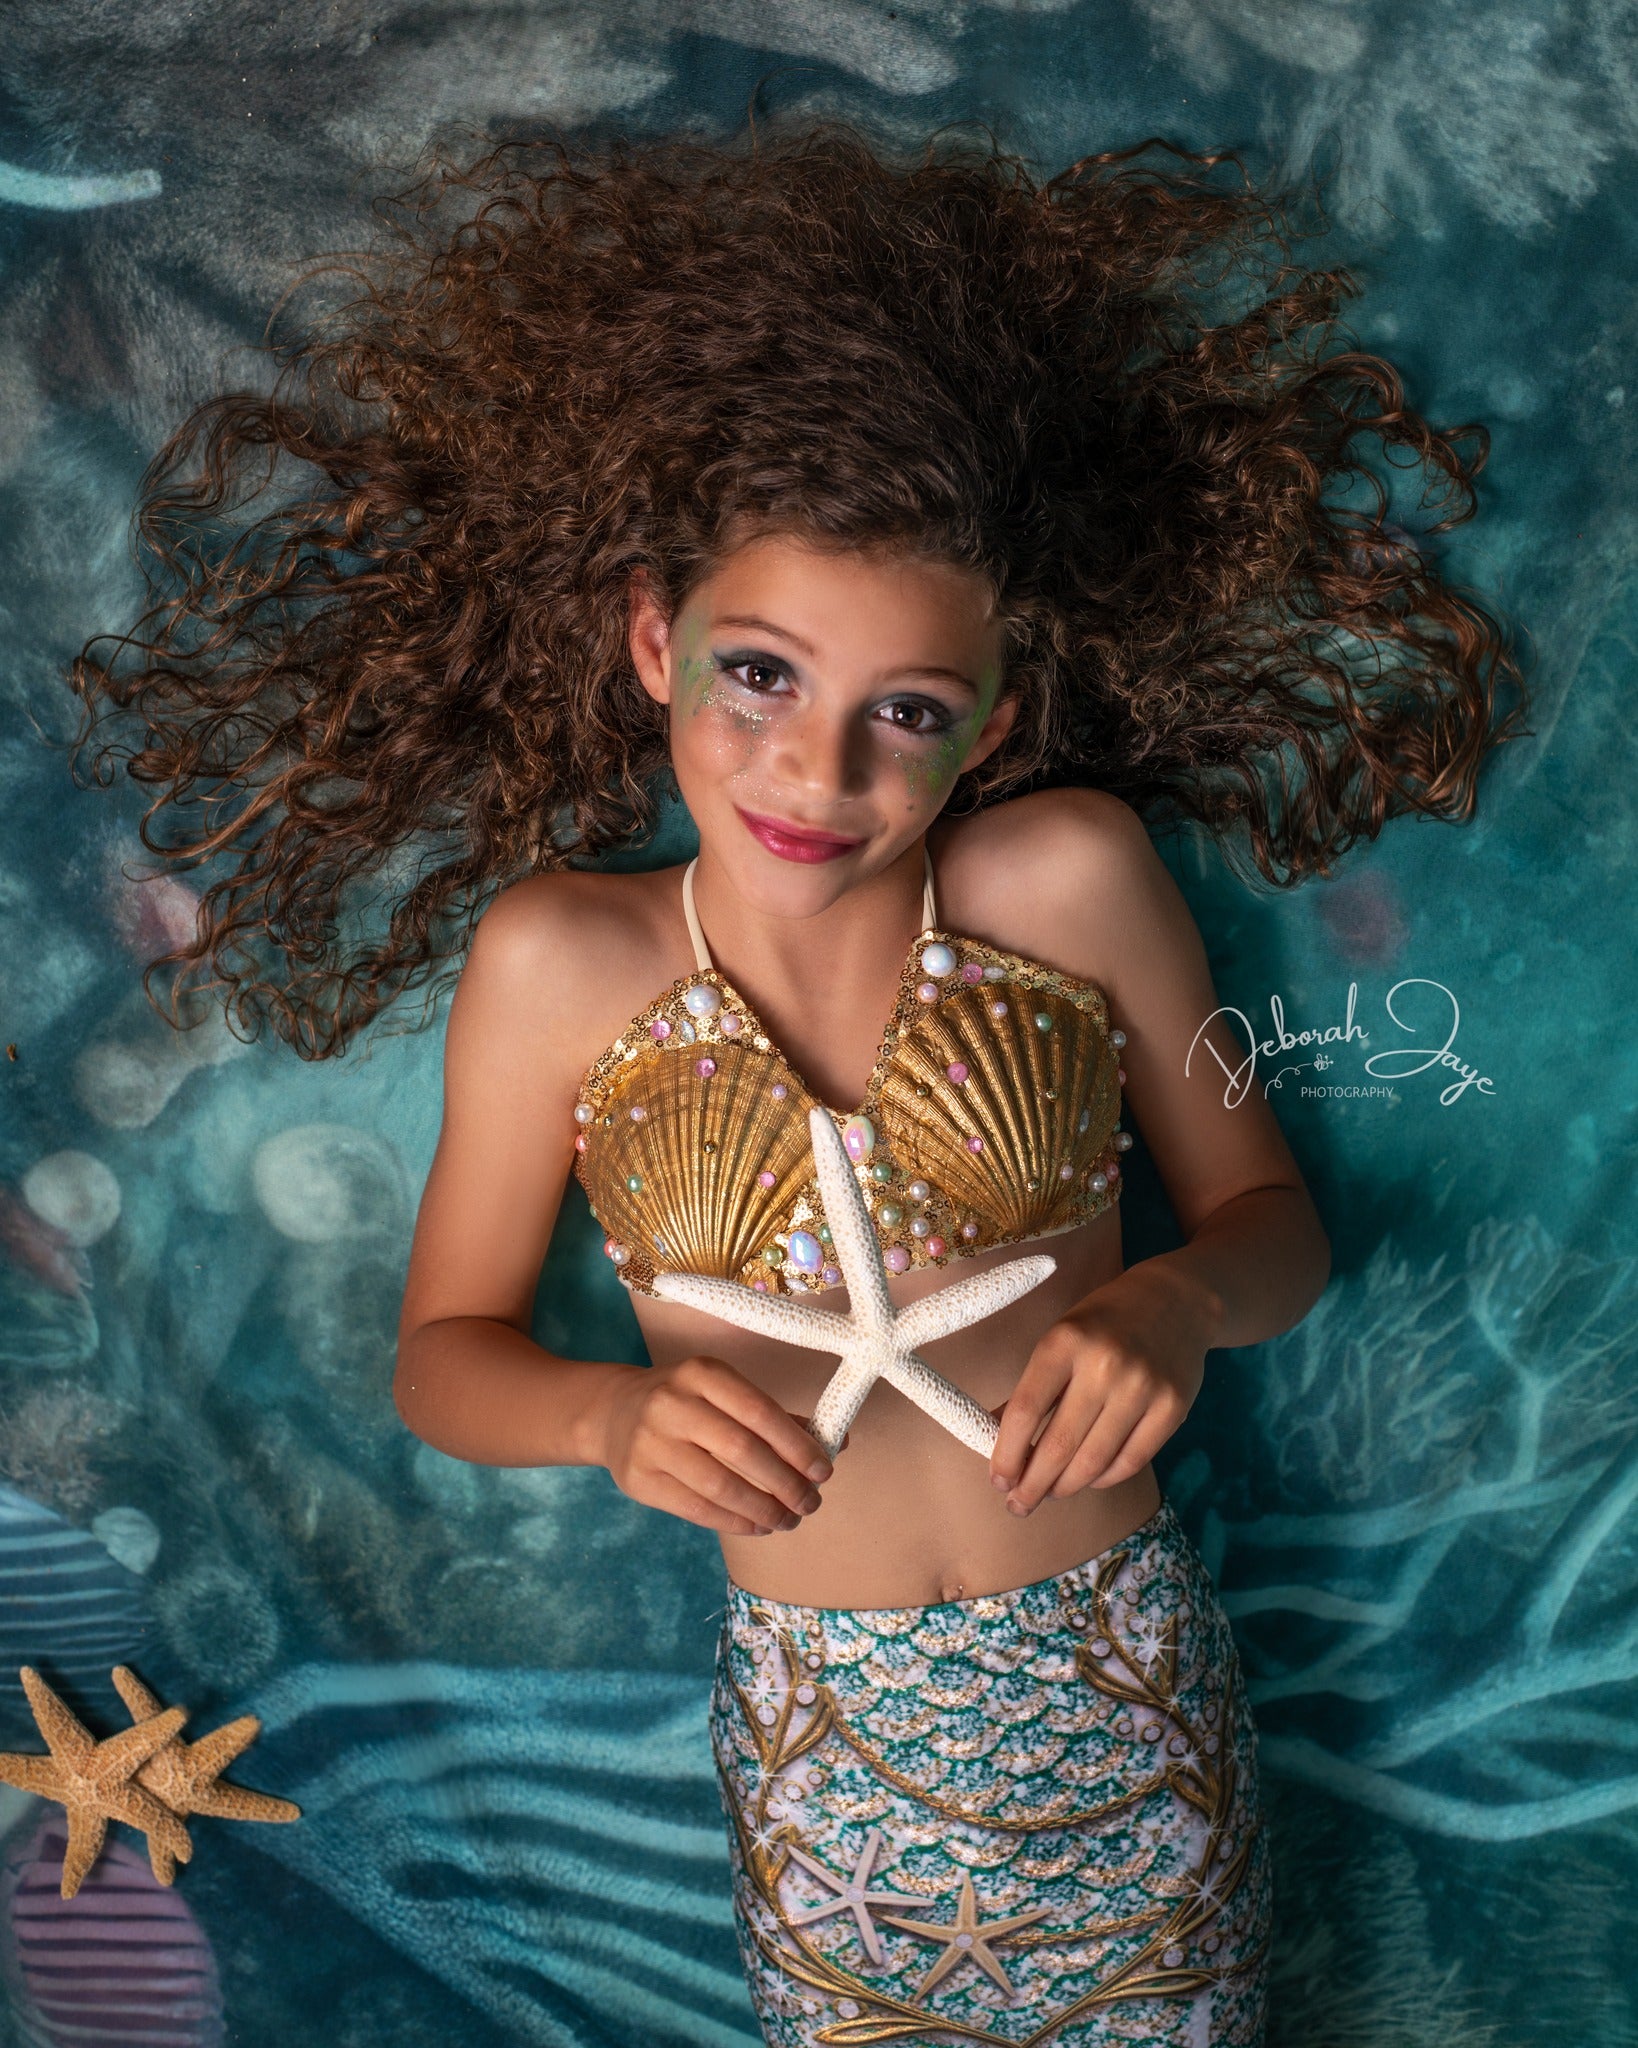 Kate Sommer Unterwasser Ozean Szene Hintergrund von Mandy Ringe Fotograf